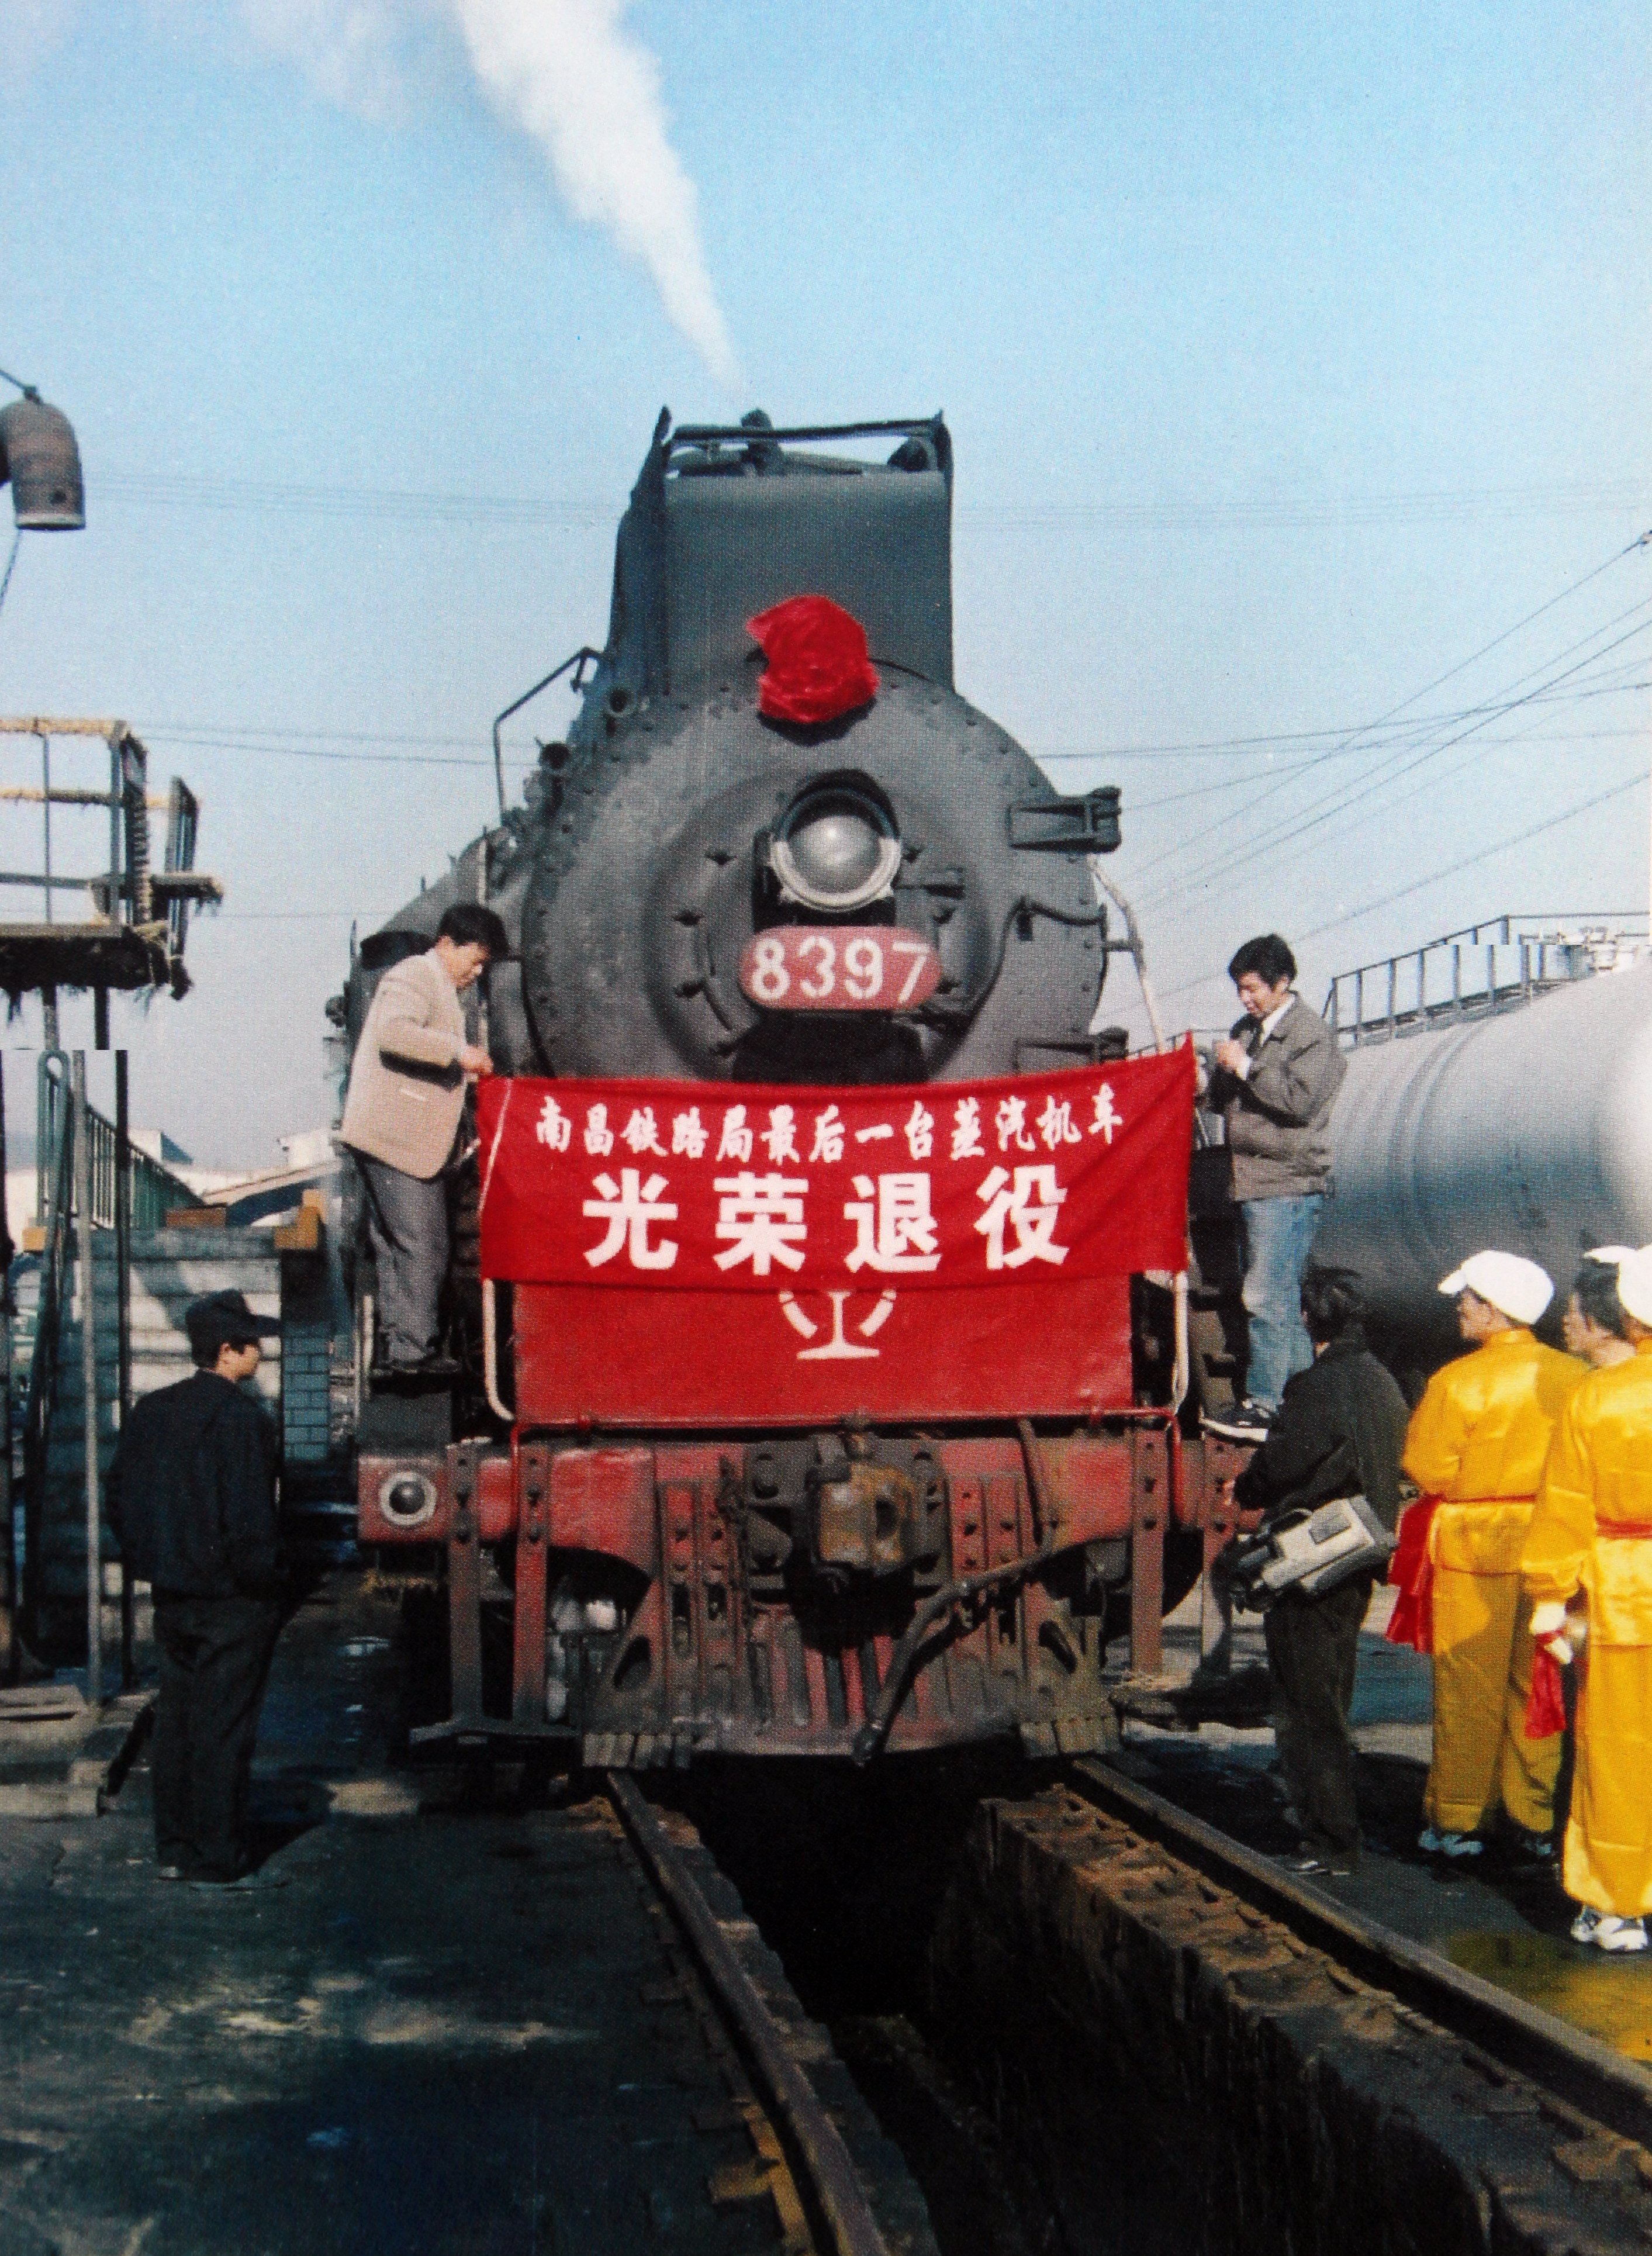 【改革•印记——看中国发展】赶上好时代的铁路修车人